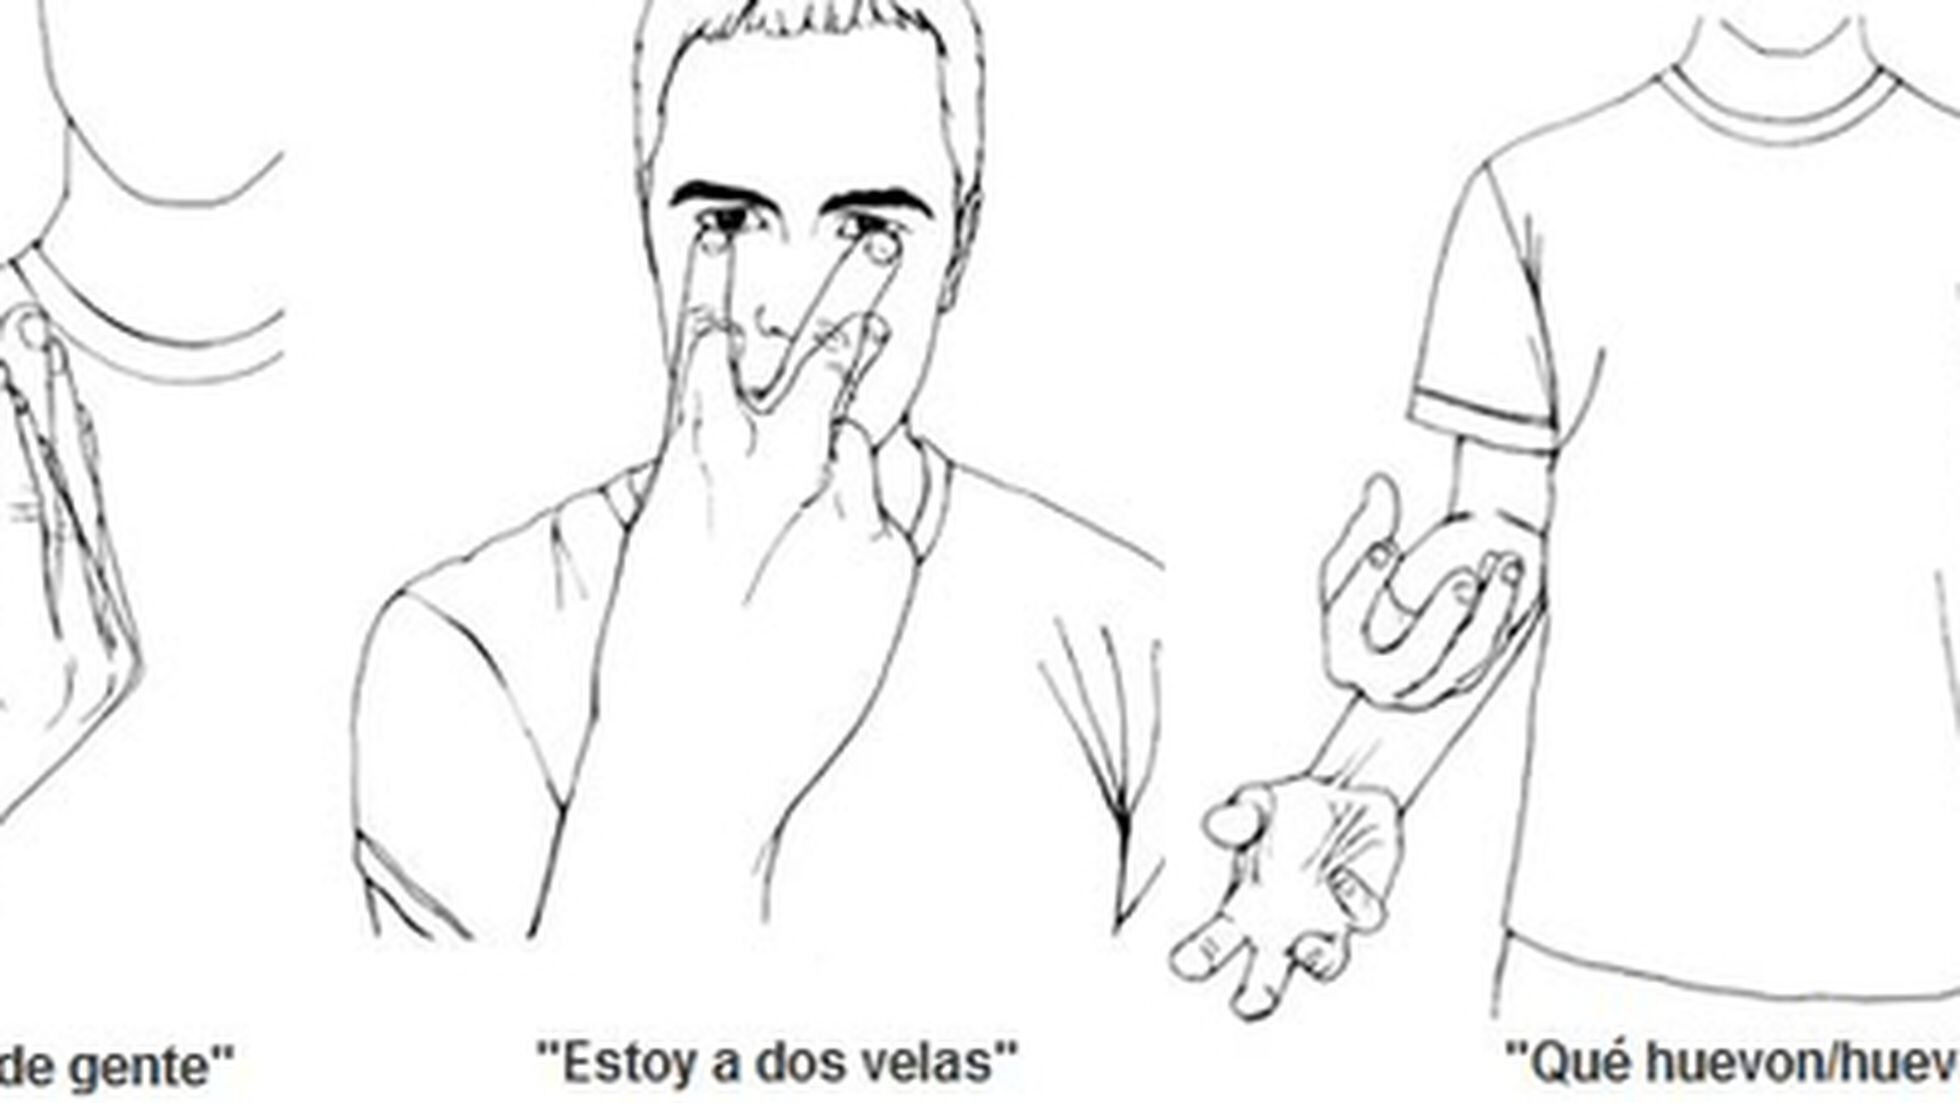 Inclinado cinta Comedia de enredo The Guardian' enseña a gesticular como un español | Noticias de actualidad  | EL PAÍS